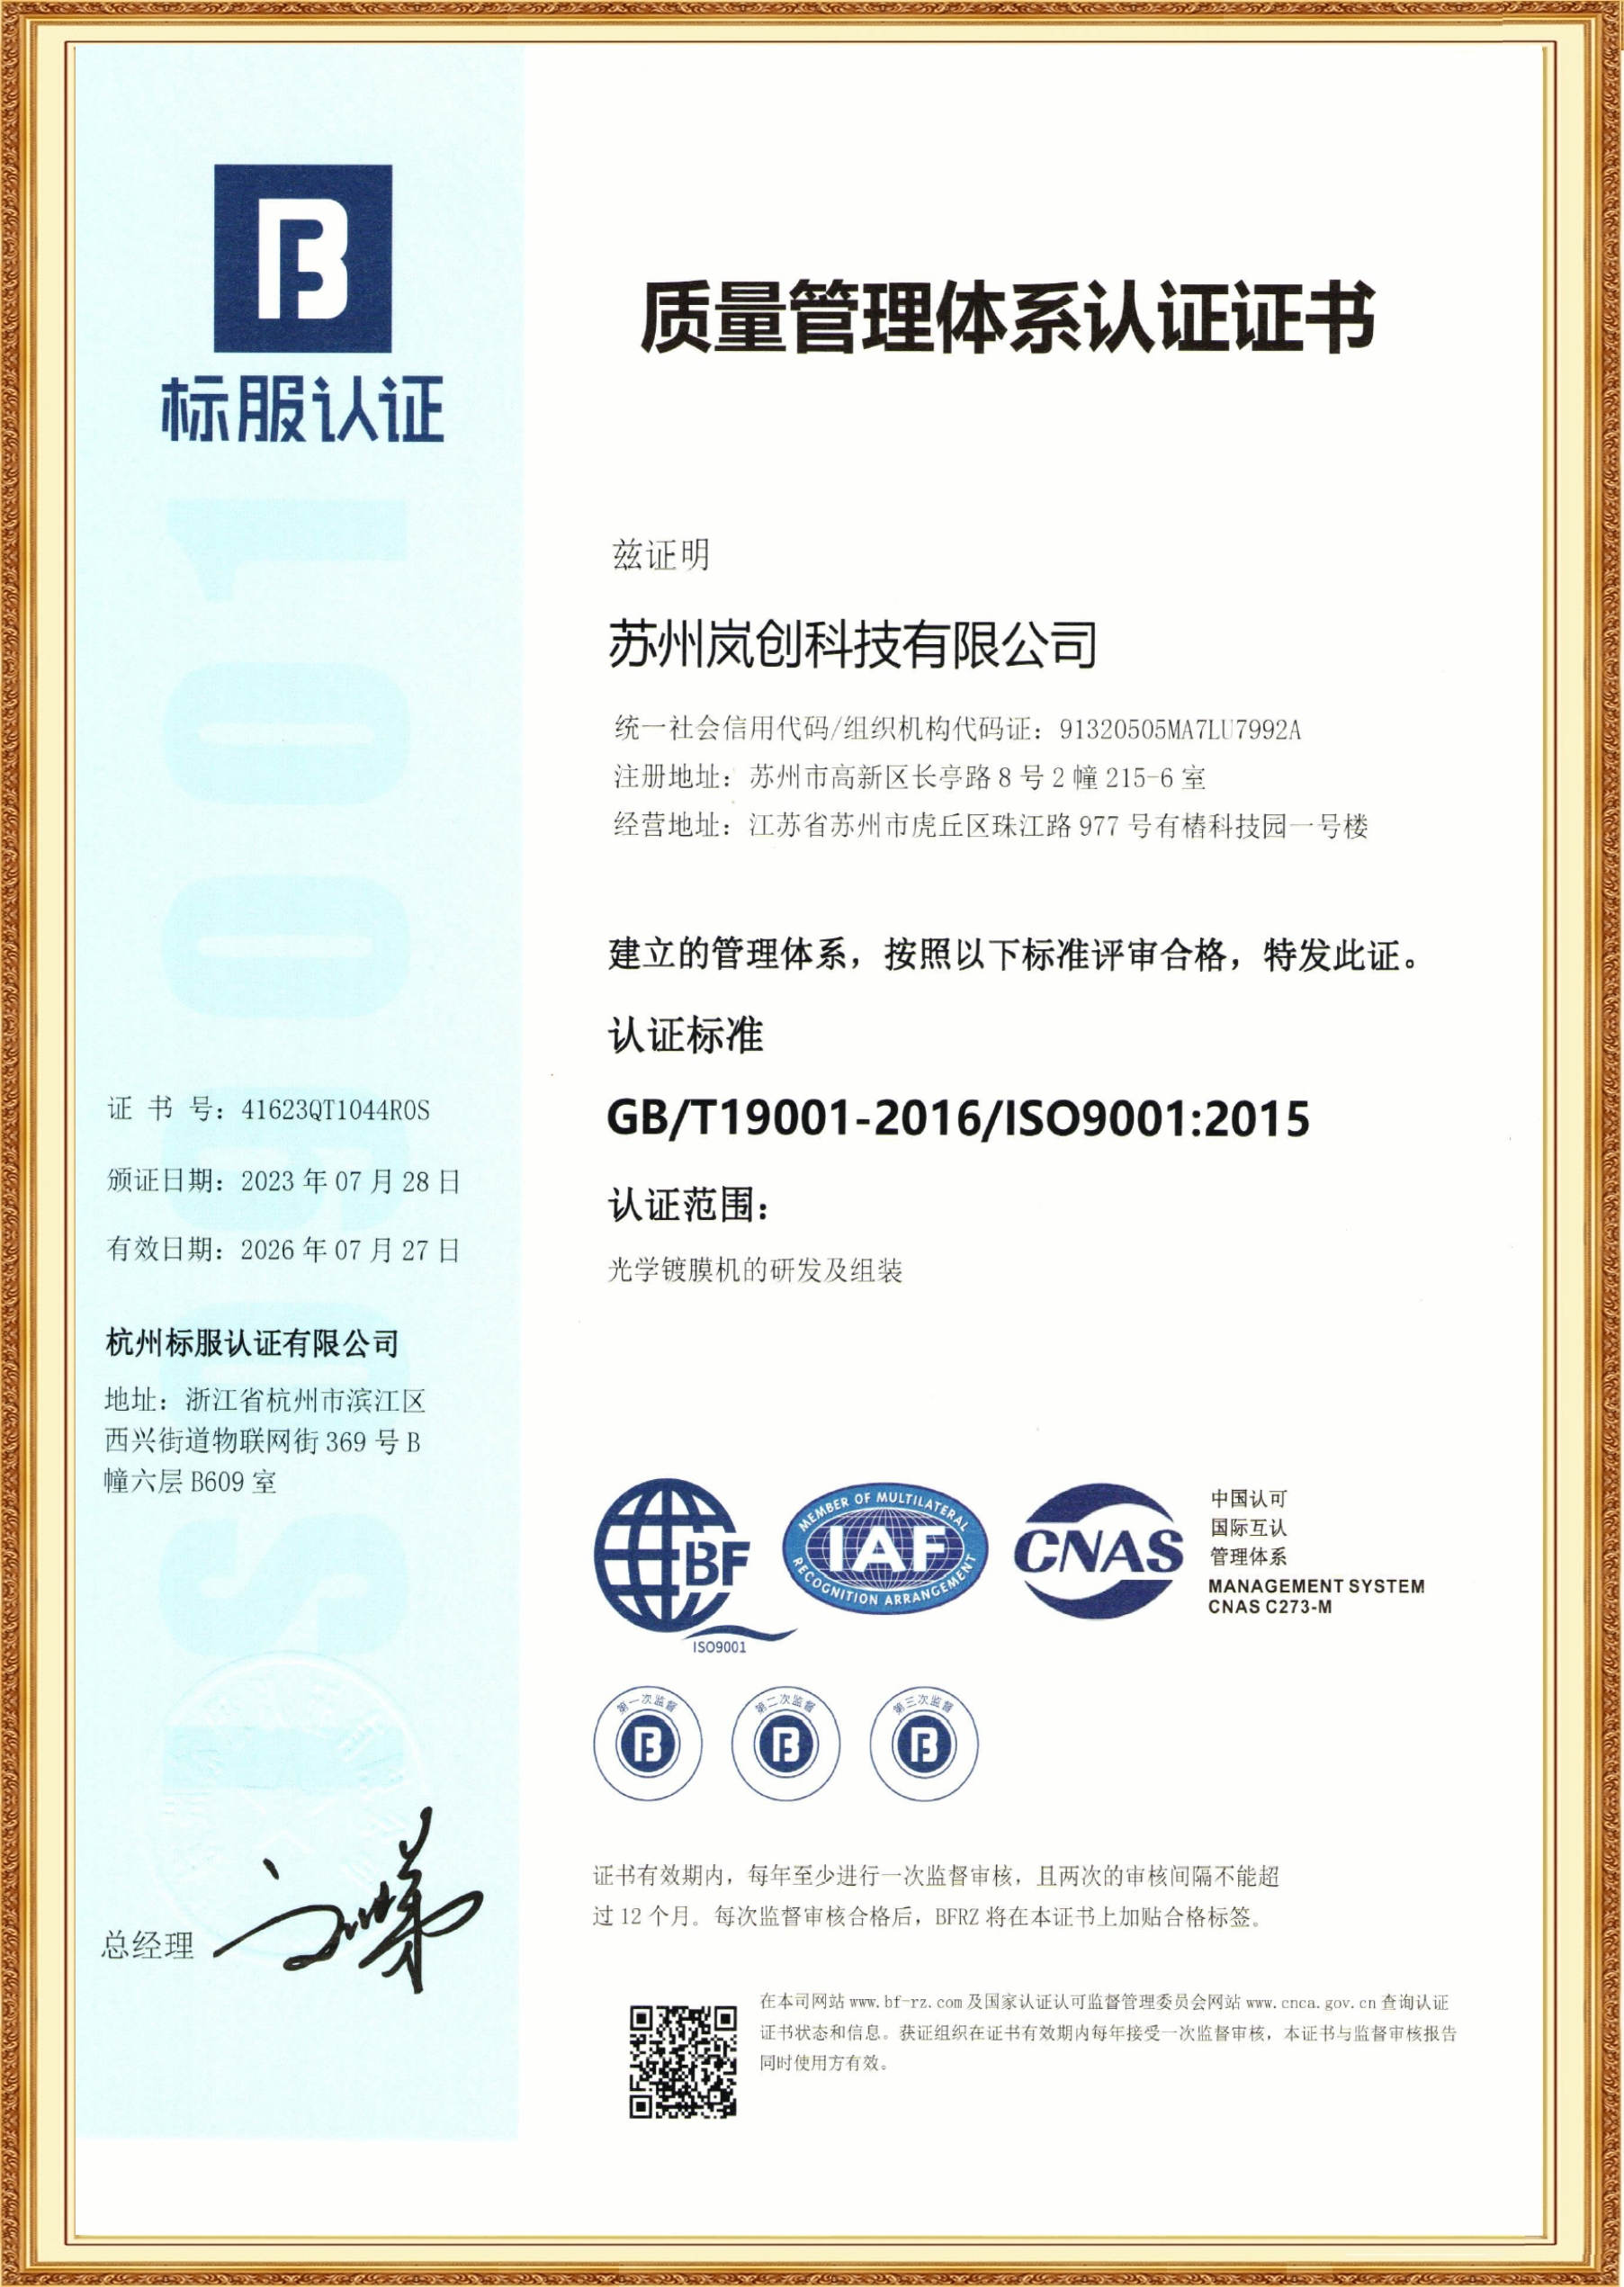 ISO9001证书-中文版.jpg